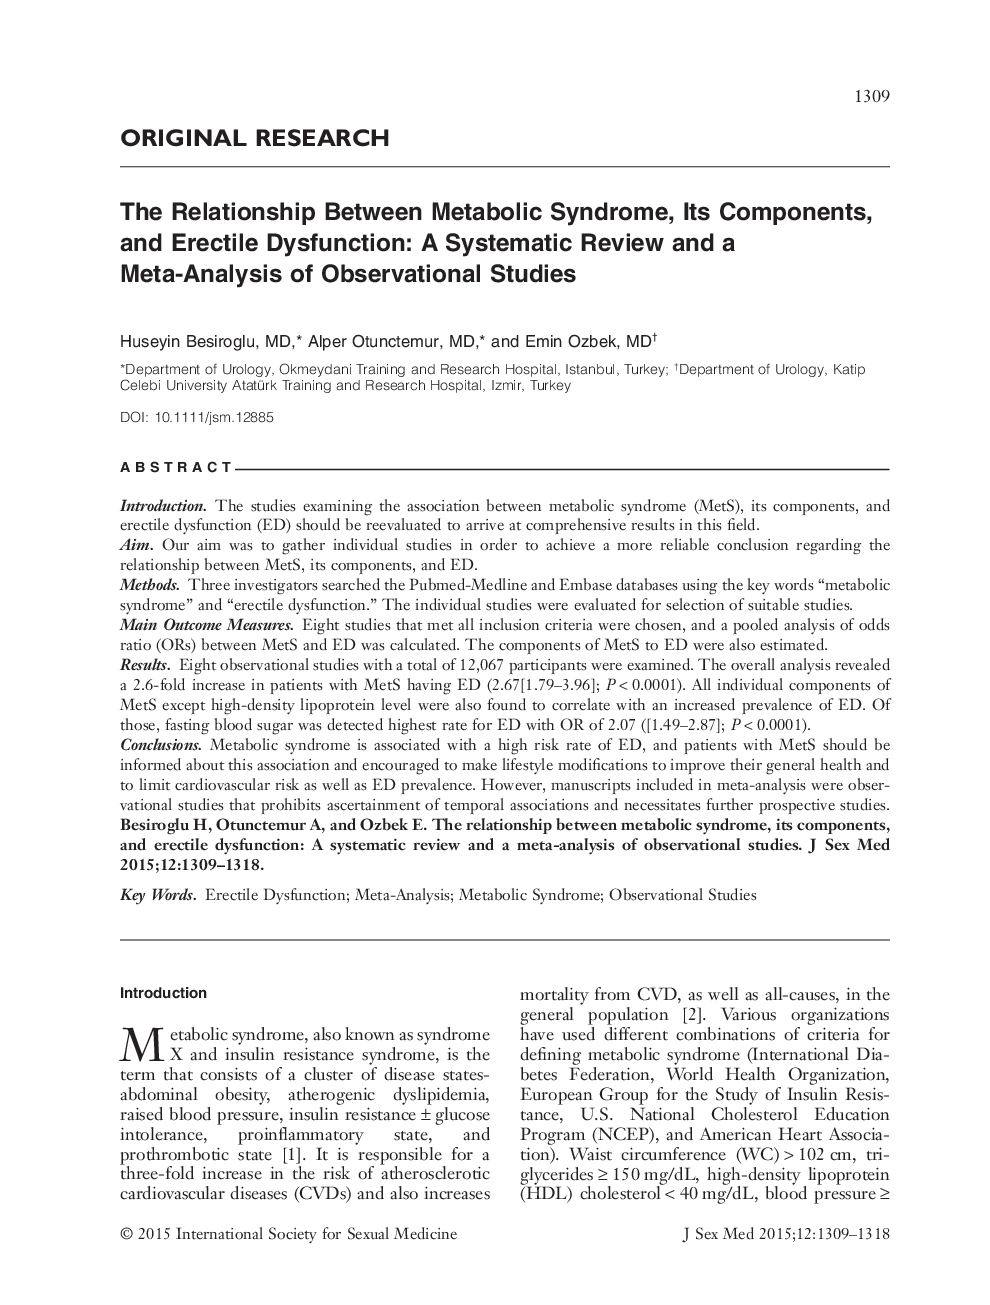 رابطه بین سندرم متابولیک، اجزای آن و اختلال نعوظ: یک بررسی منظم و یک متاآنالیز مطالعات مشاهداتی 